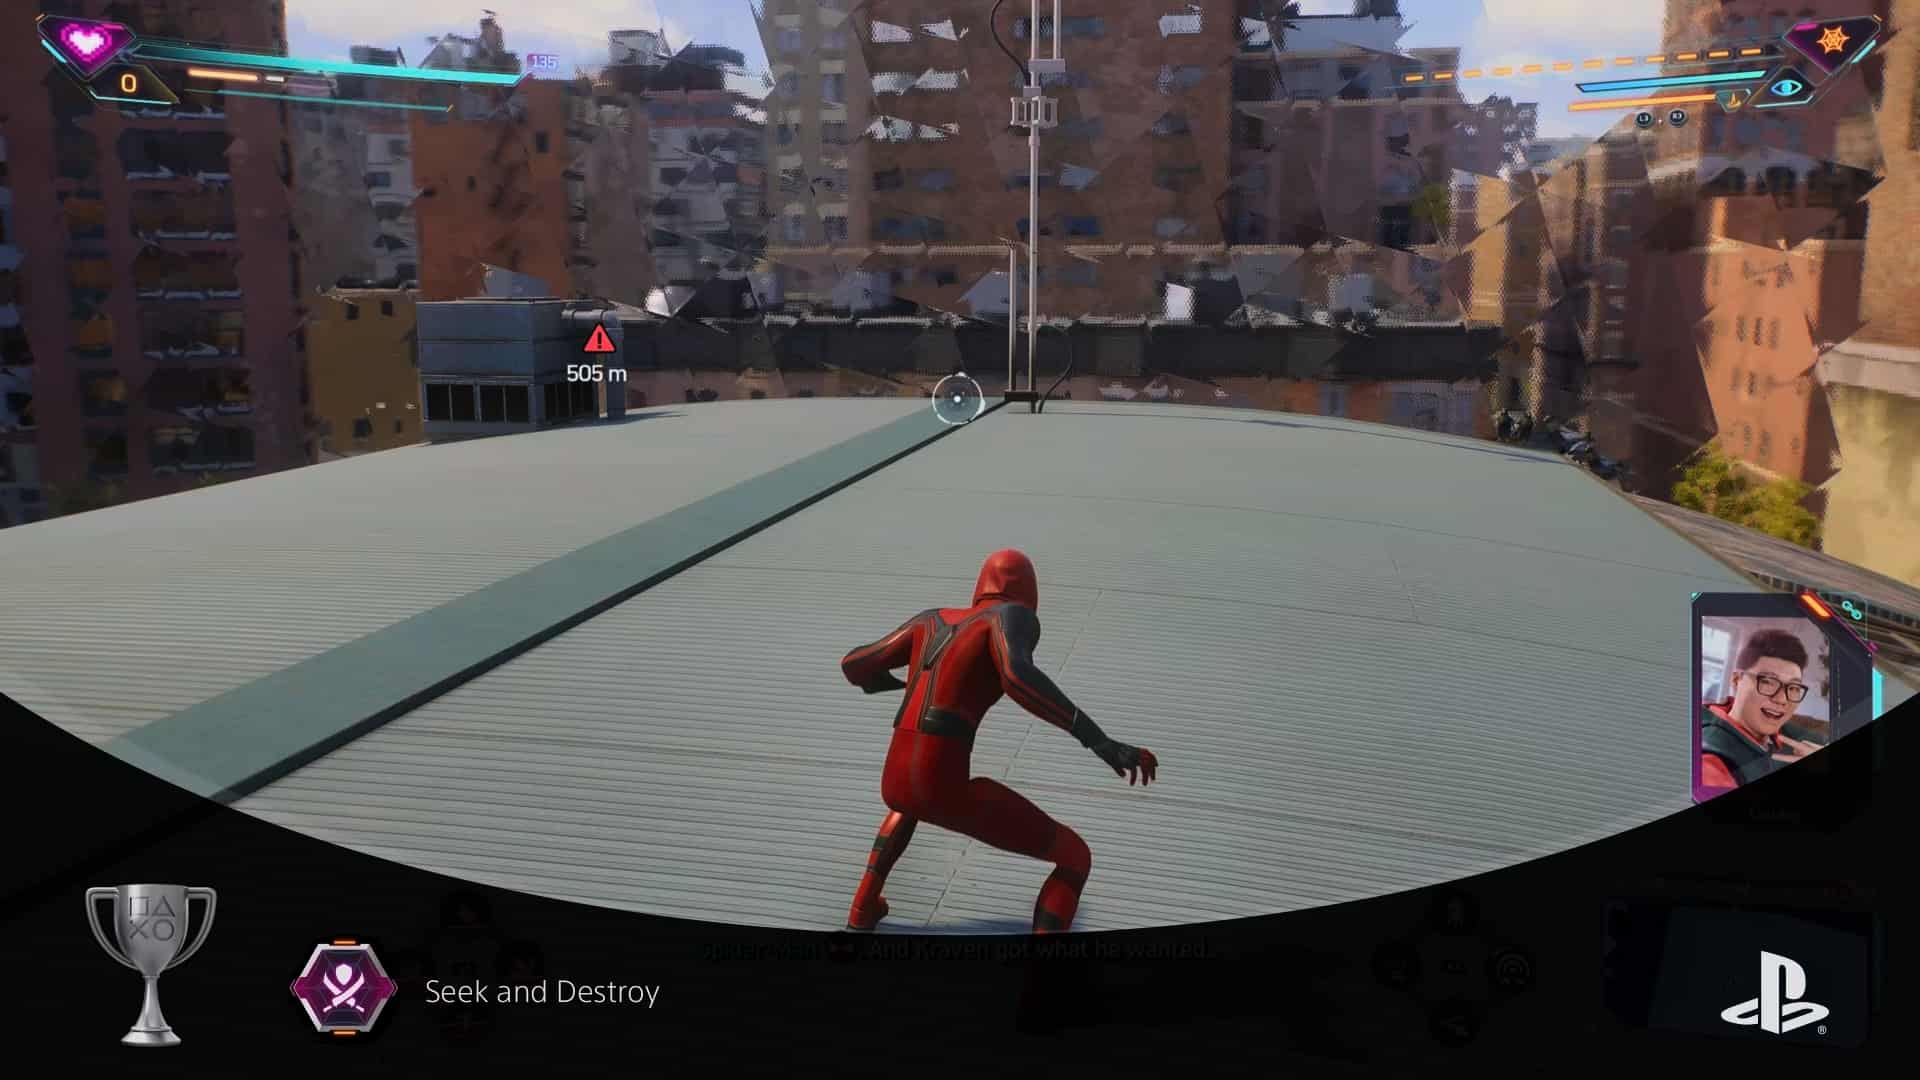 Spider-Man 2 trophy list: Spider-Man on a roof when unlocking a trophy